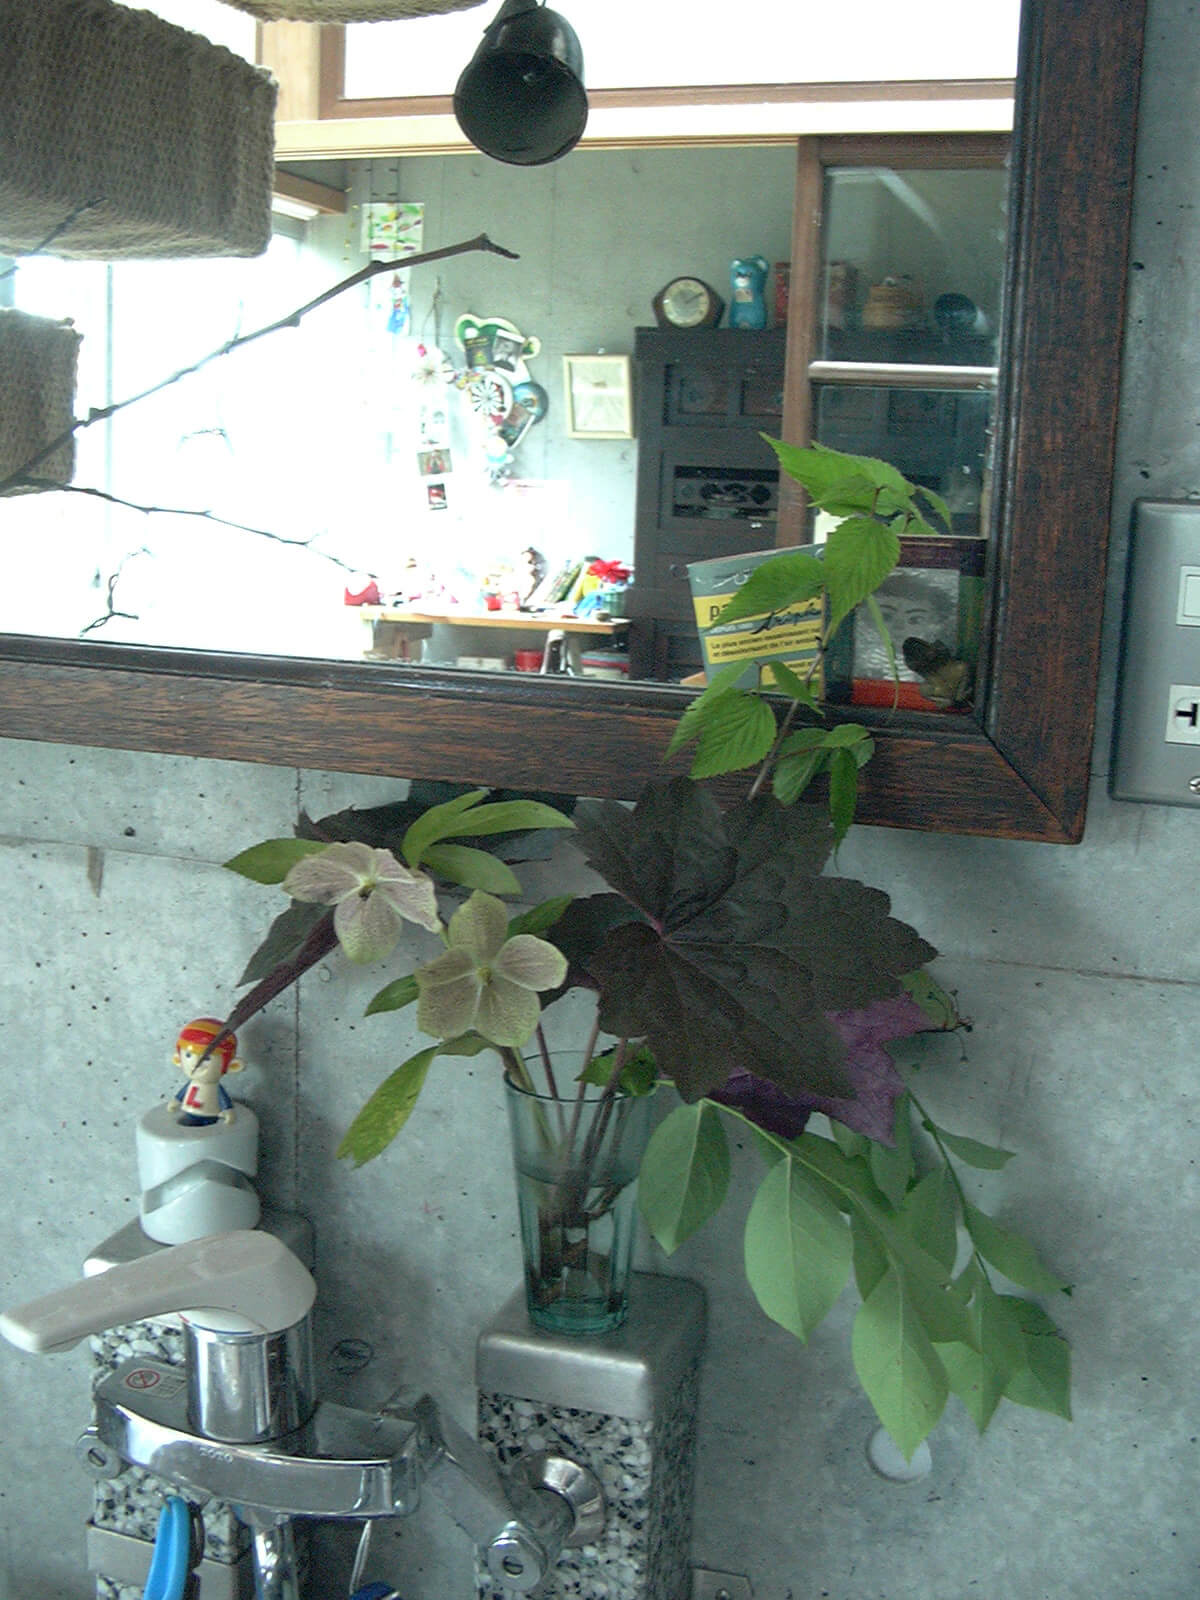 洗面所に飾られた、コップに活けられた複数の種類の葉